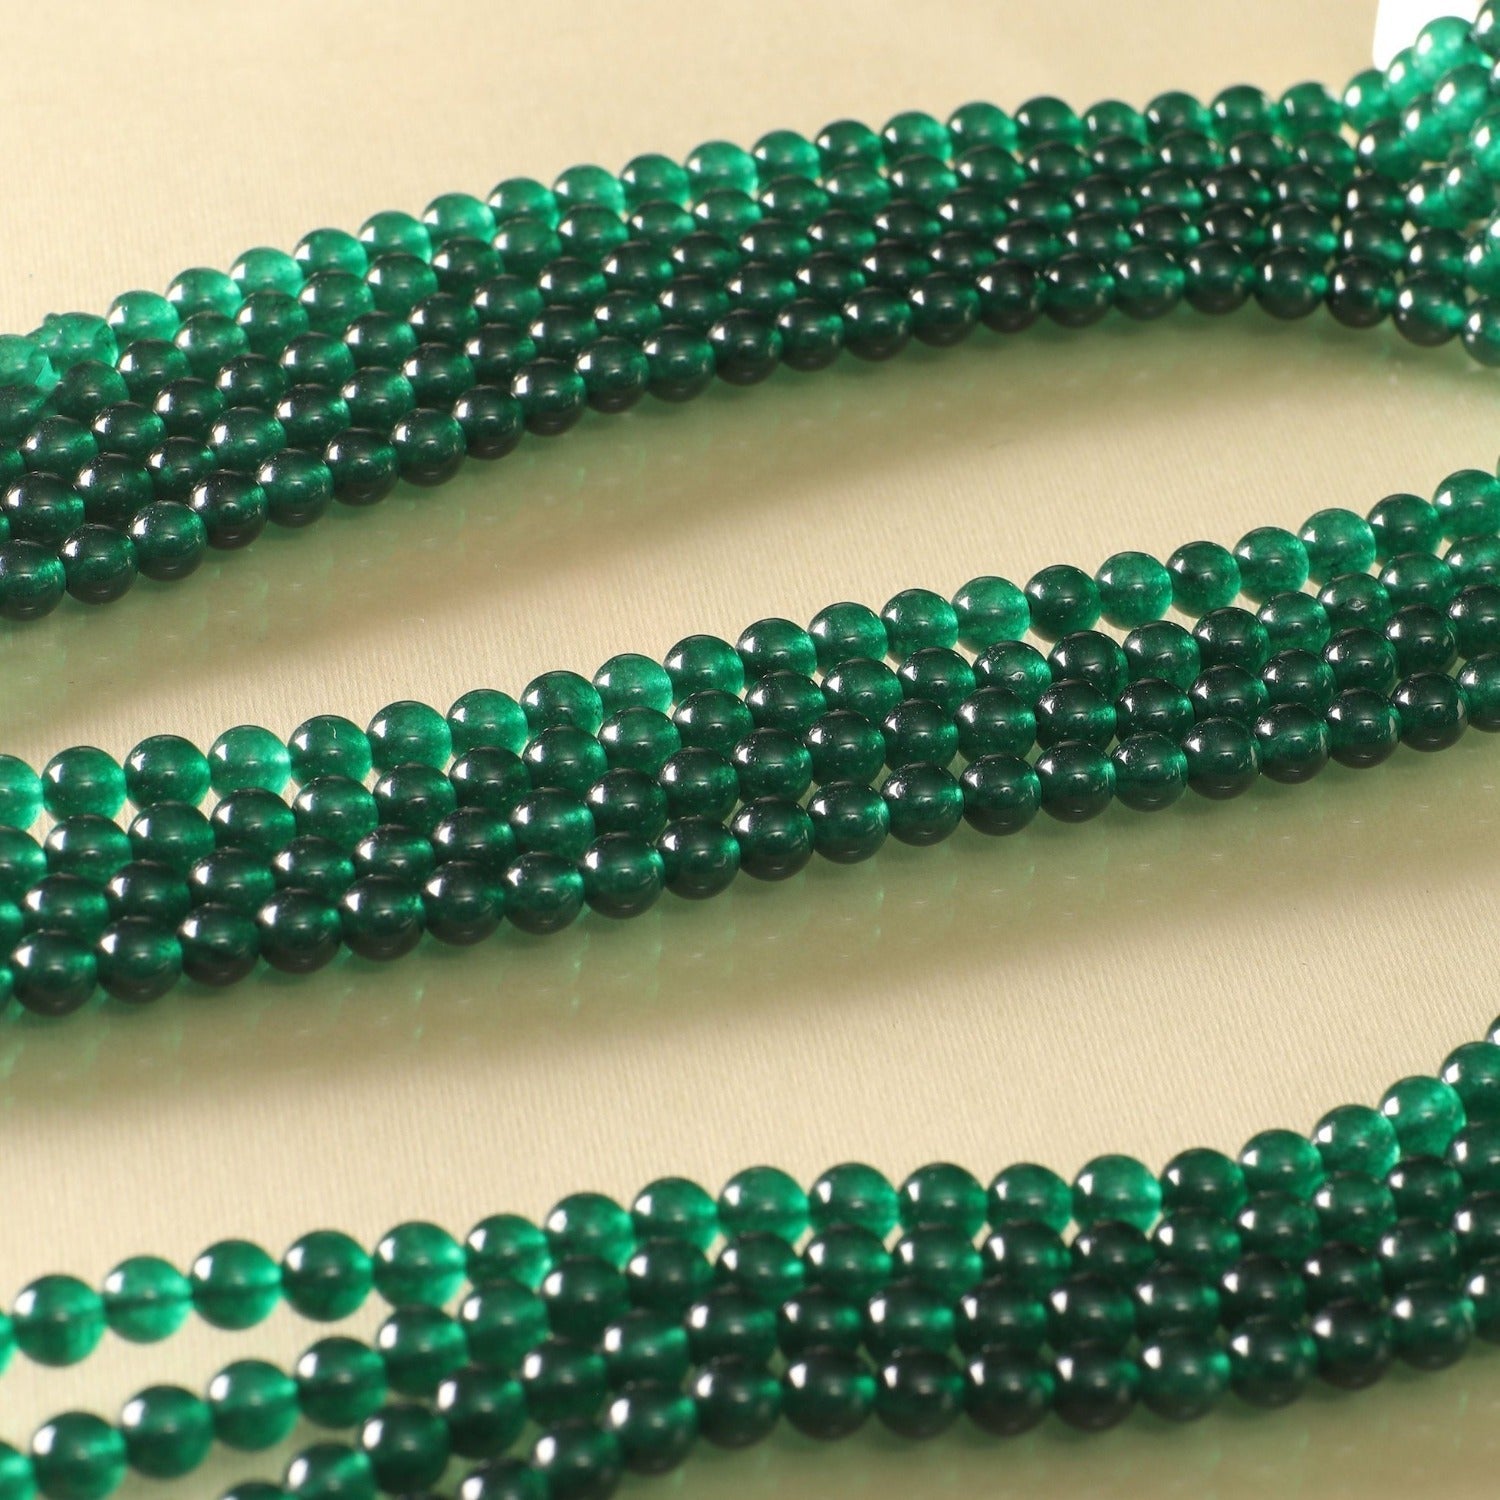 quartzite jade beads for jewelry making